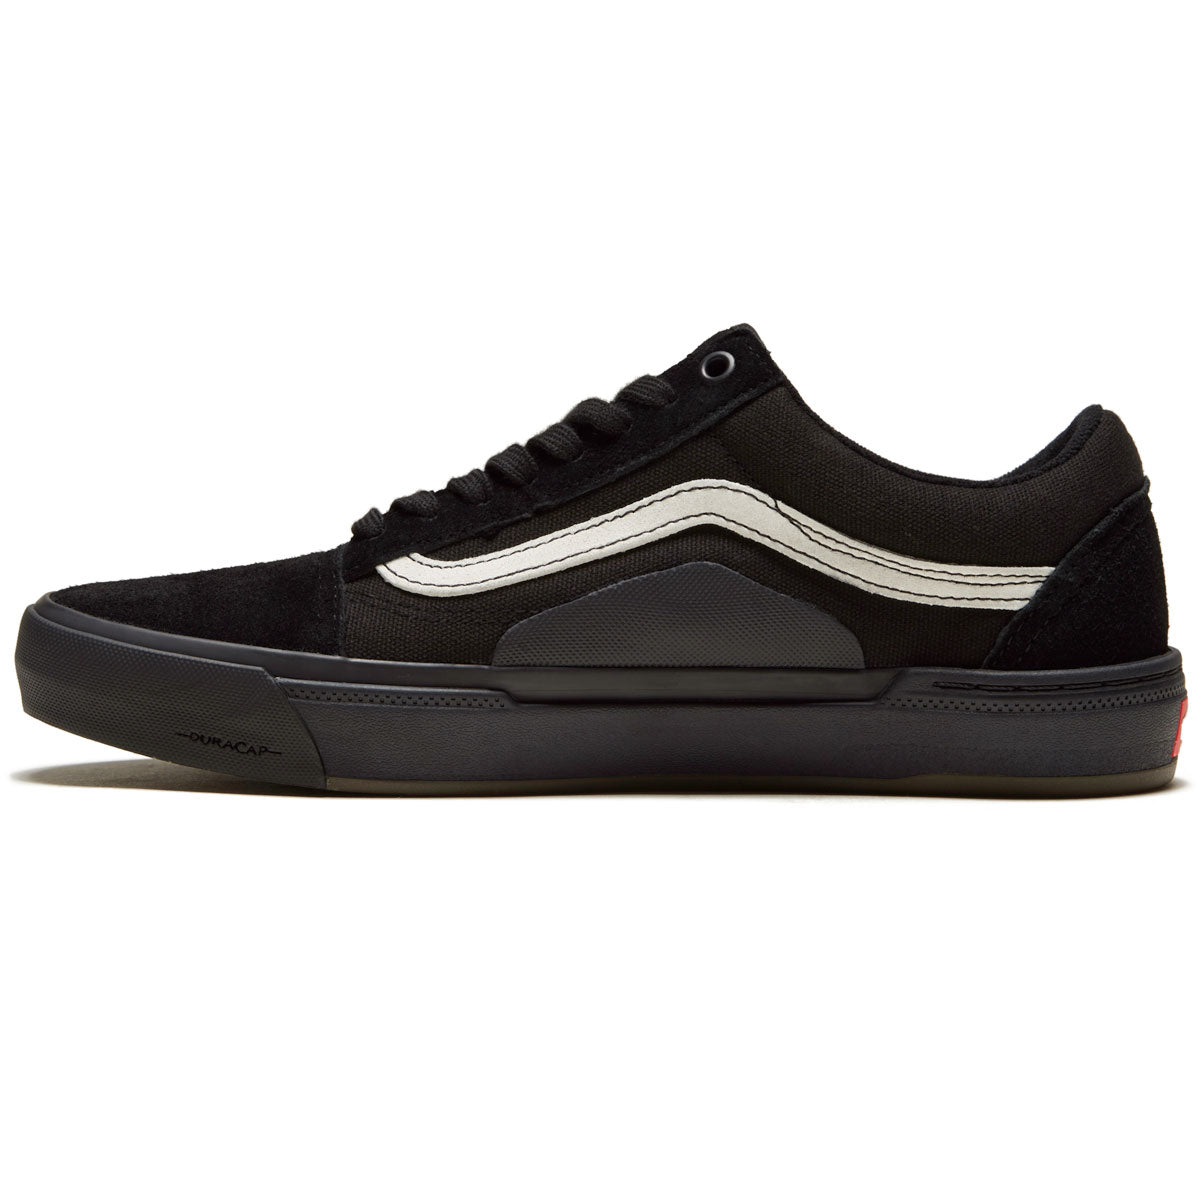 Vans Bmx Old Skool Shoes - Black/Black image 2